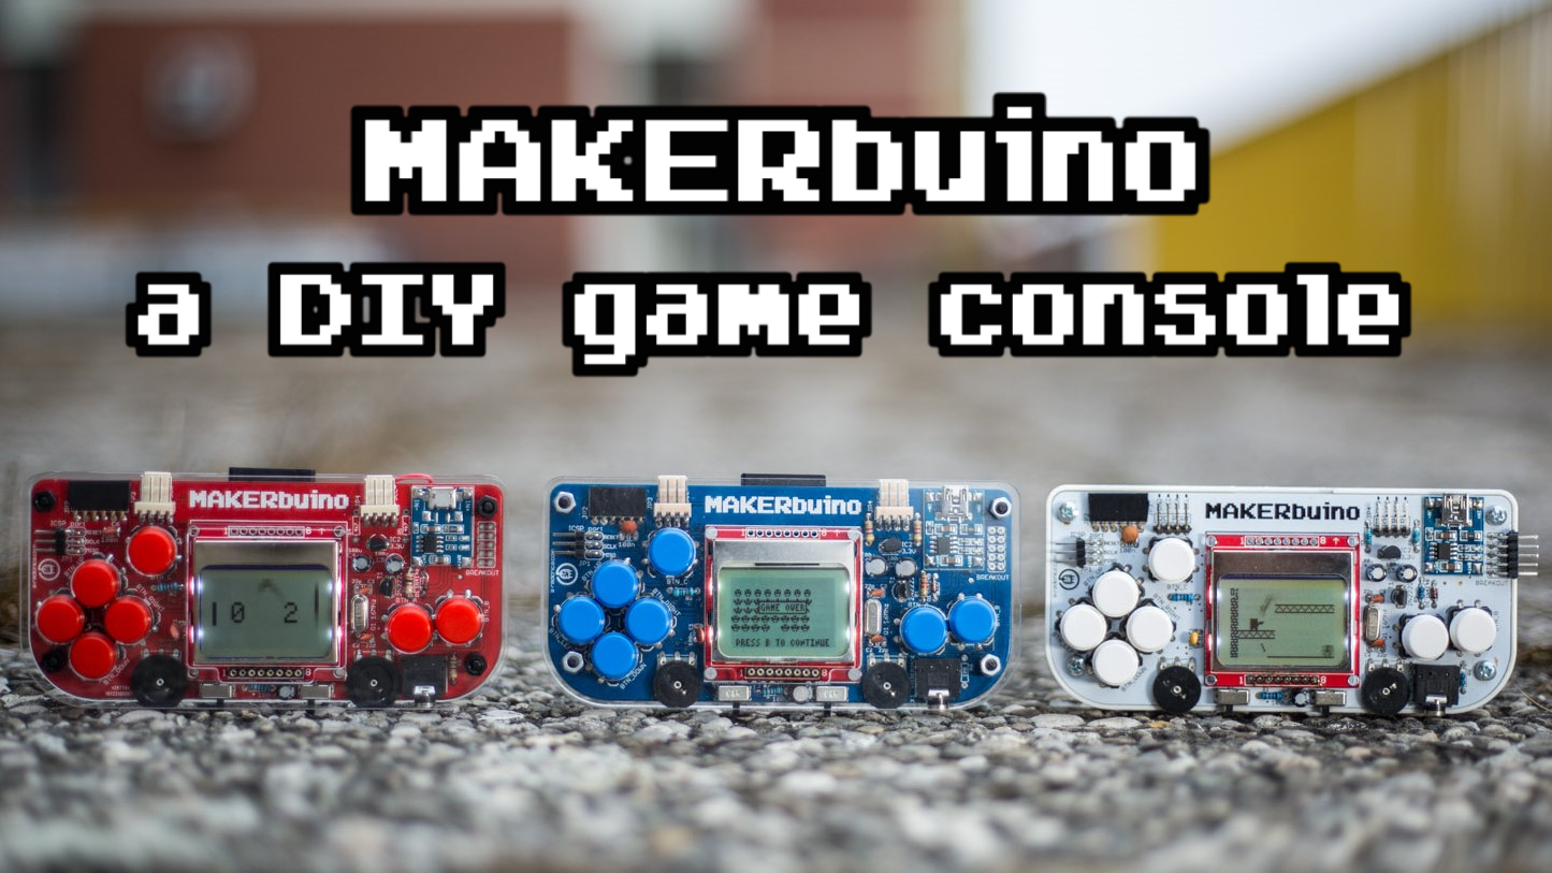 Makerbuino education kit